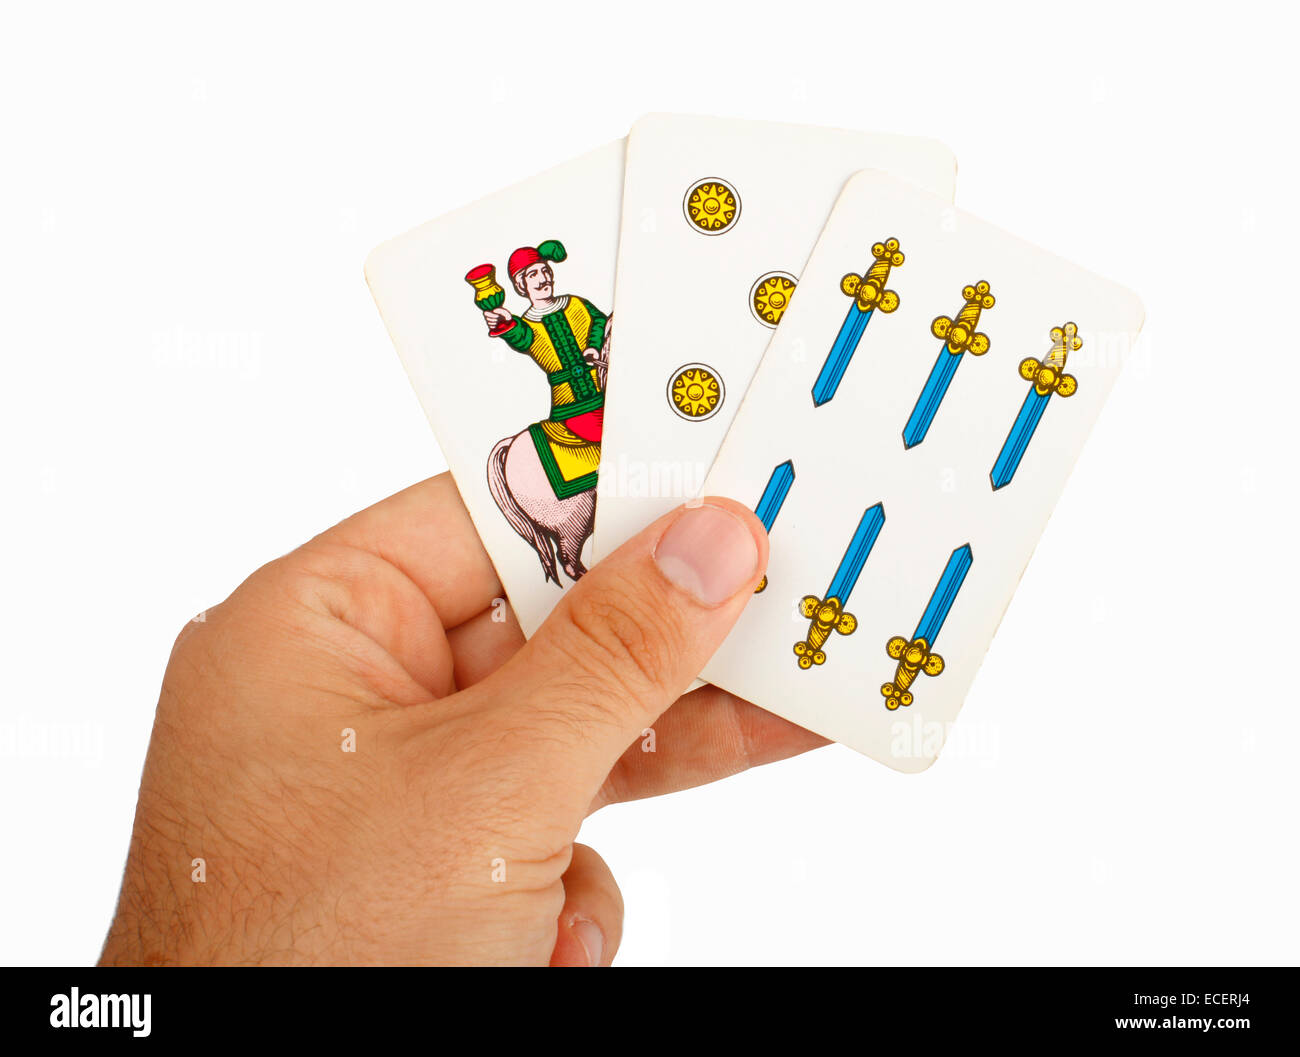 Juego de cartas con tarjetas napolitanas típicas de Nápoles. Foto de stock